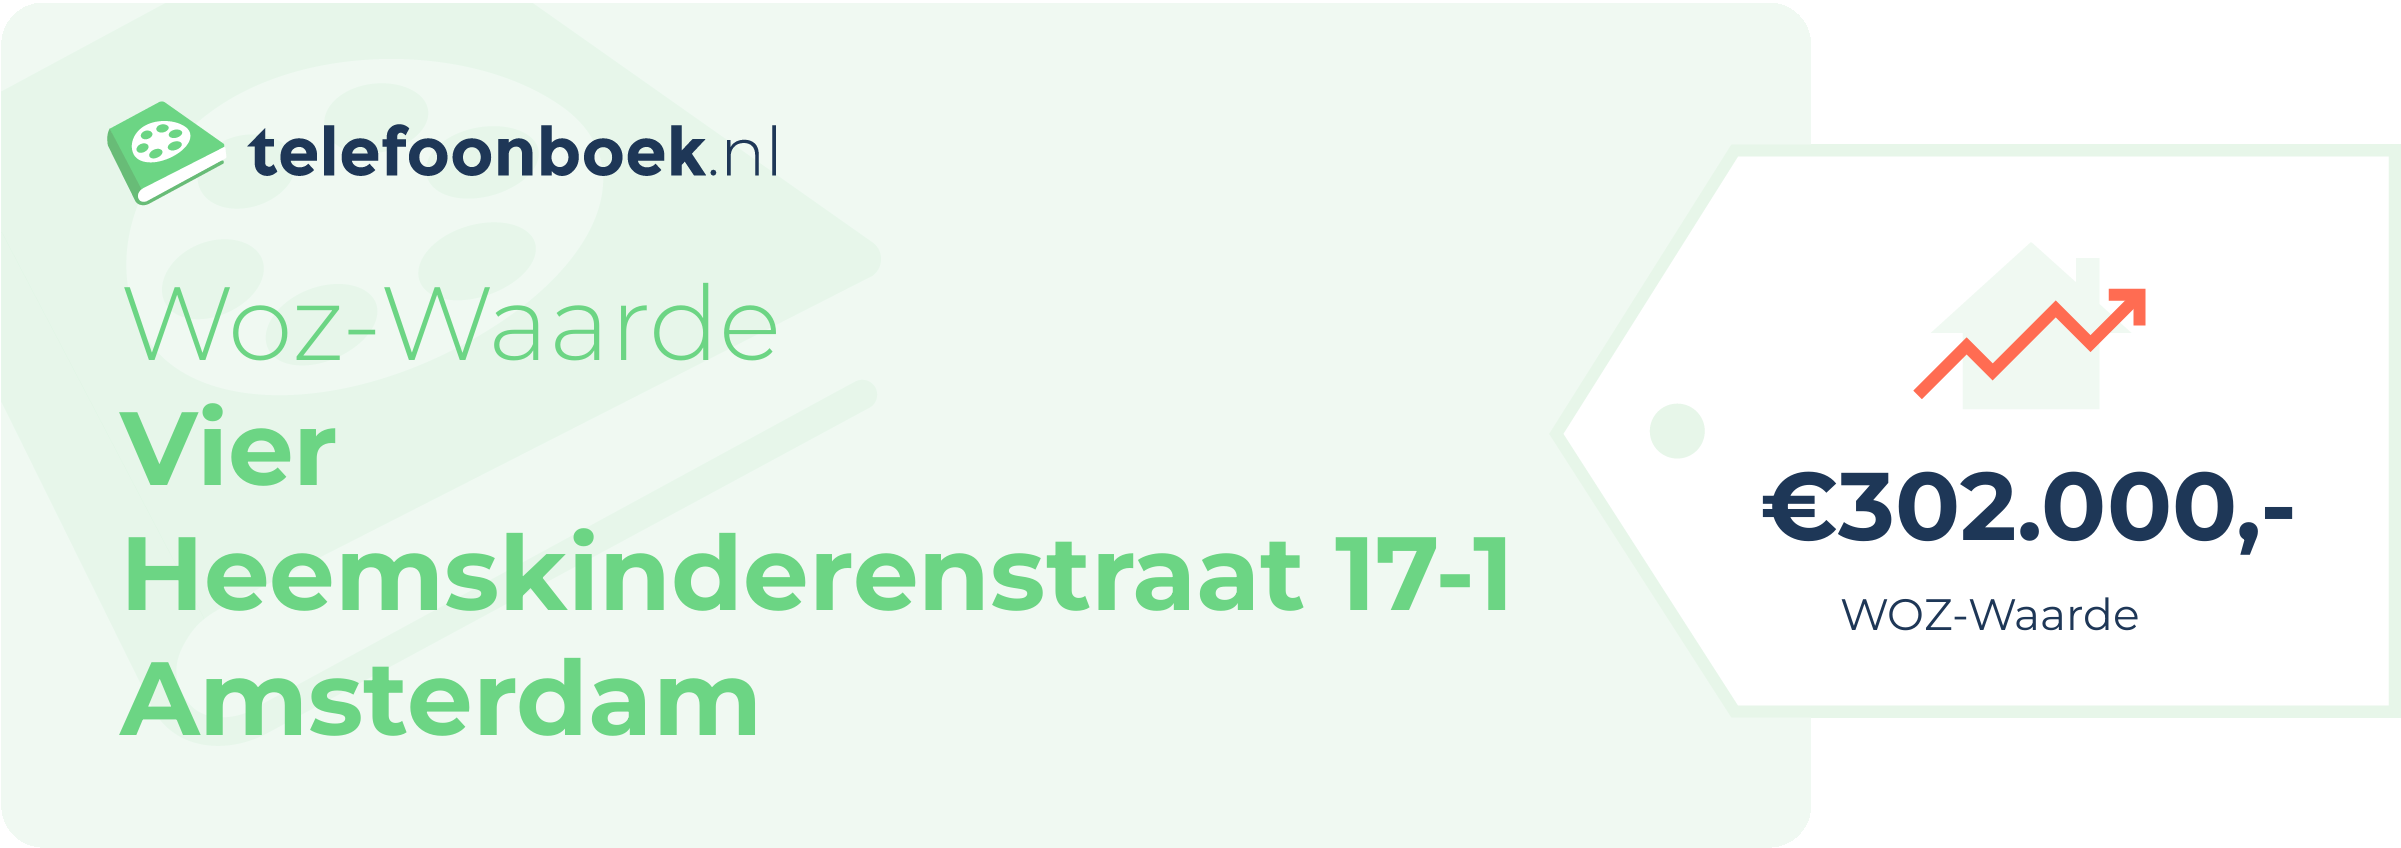 WOZ-waarde Vier Heemskinderenstraat 17-1 Amsterdam